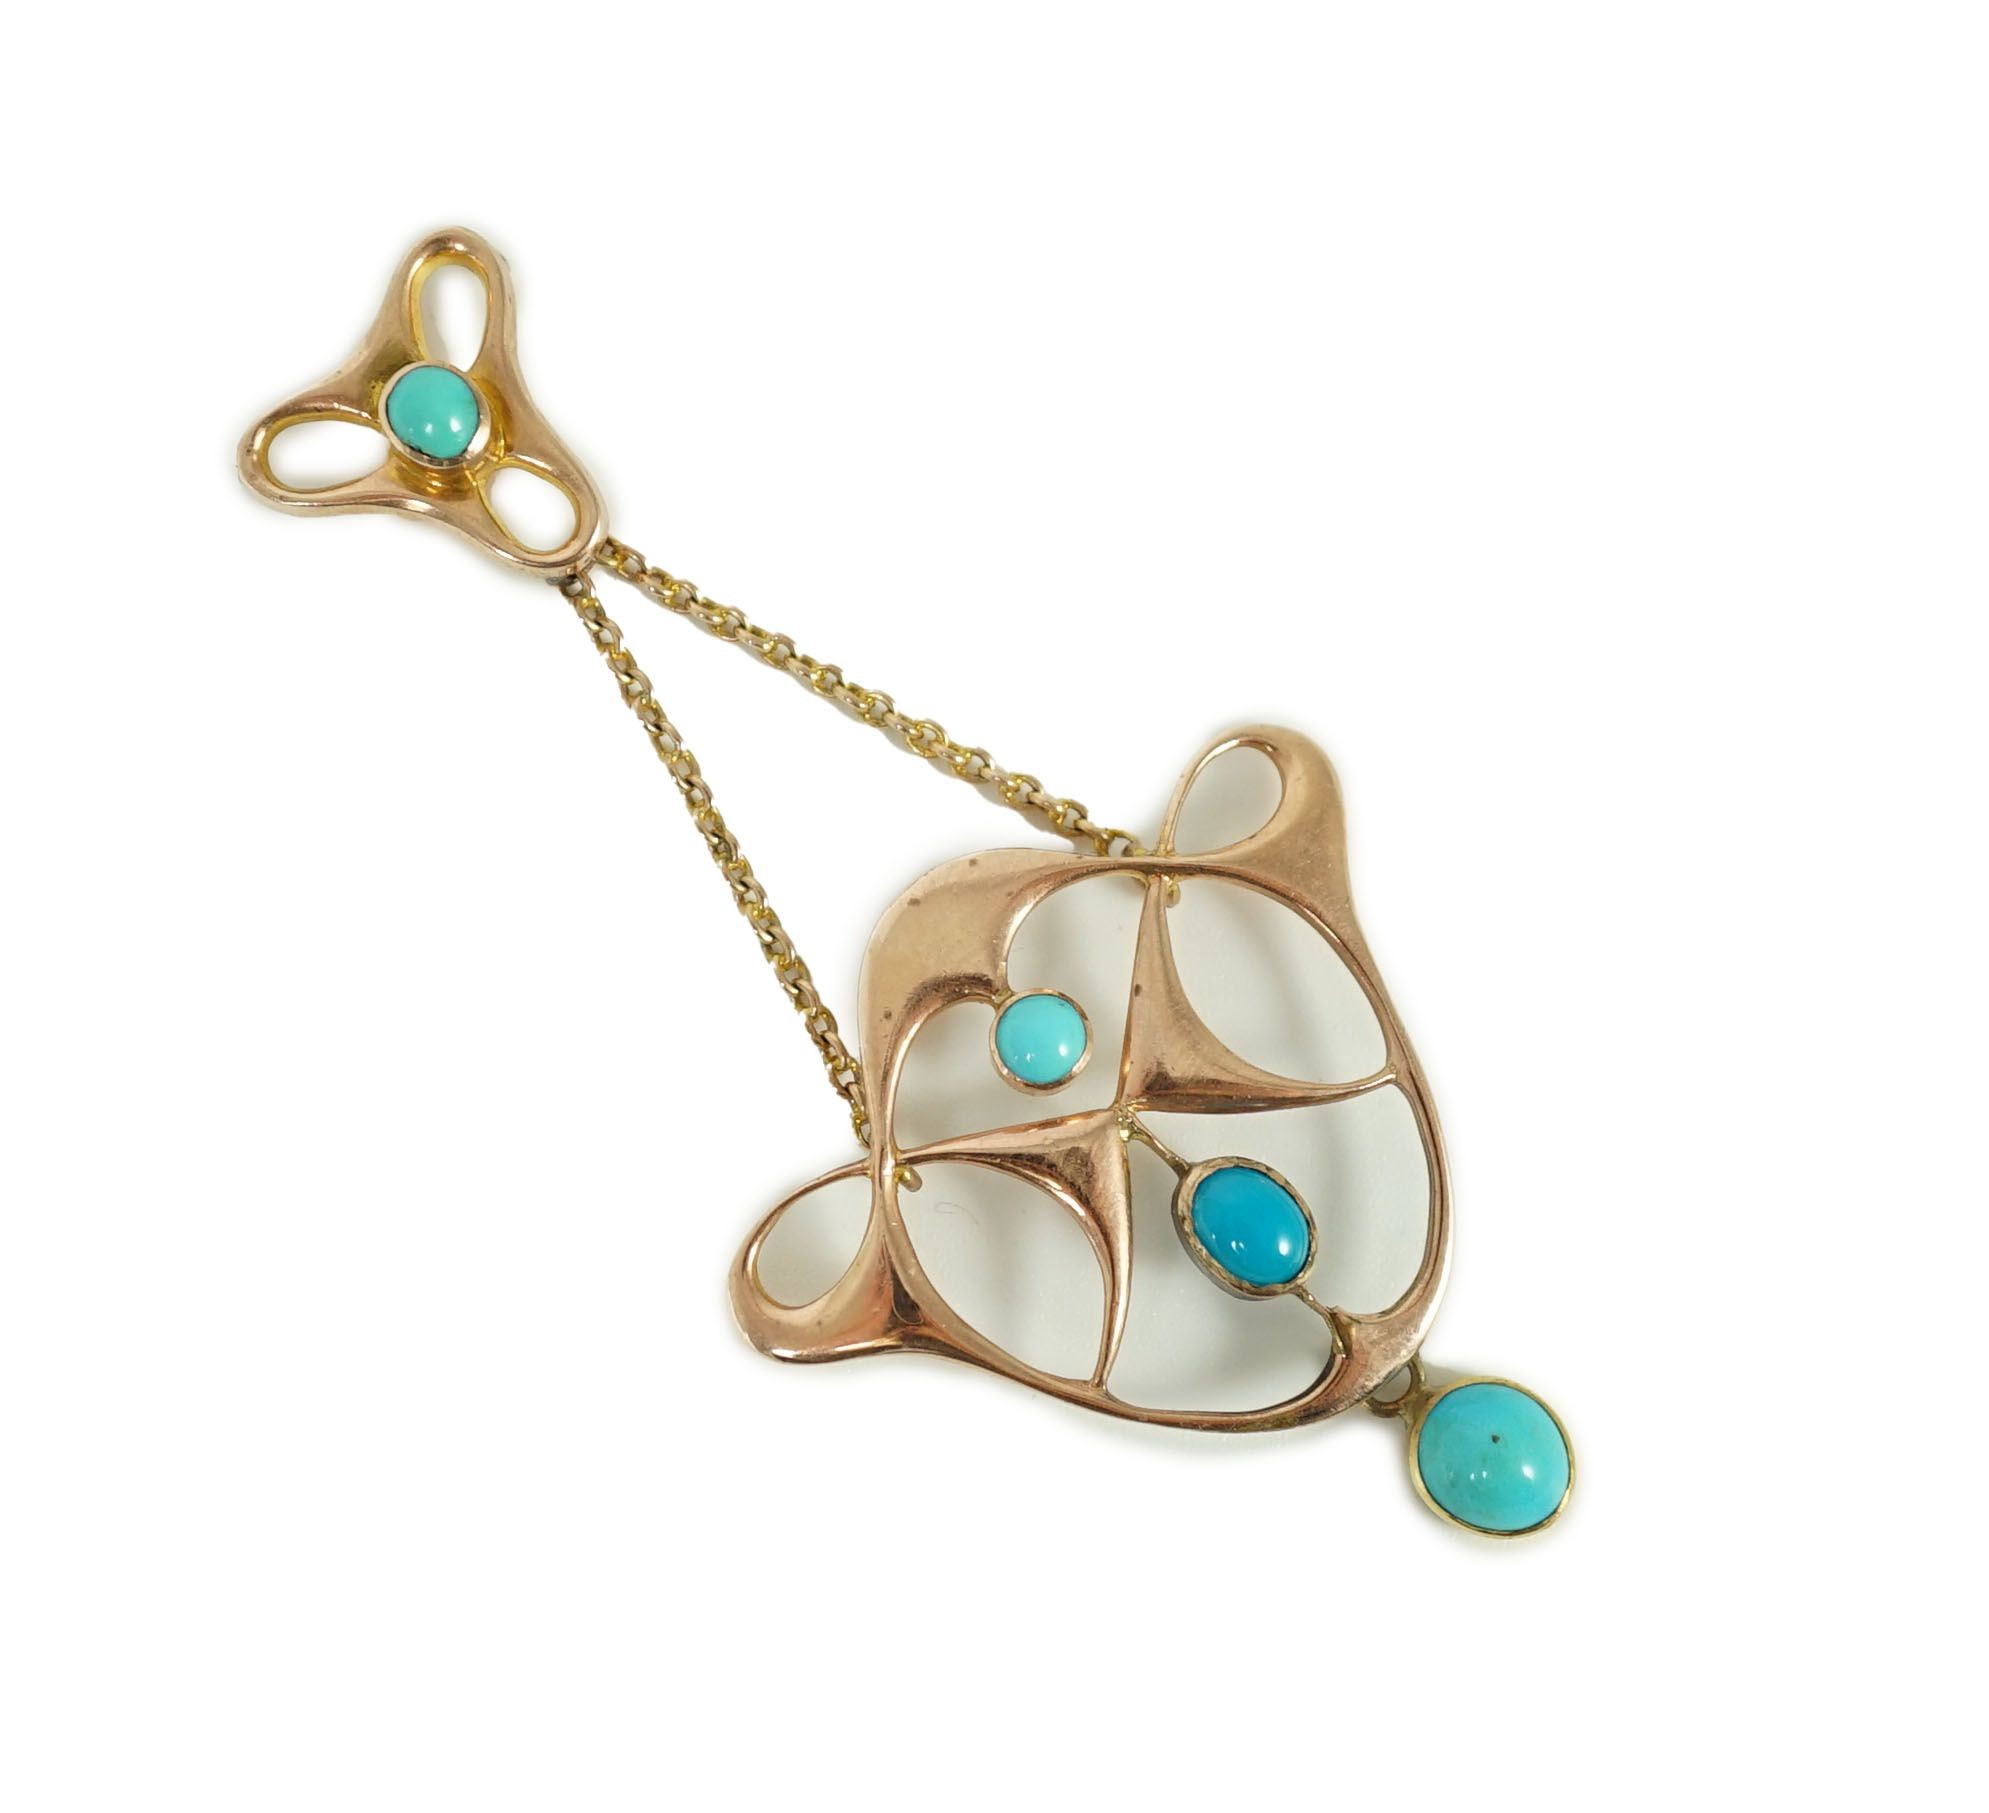 An Edwardian Art Nouveau 9ct gold and turquoise set drop pendant